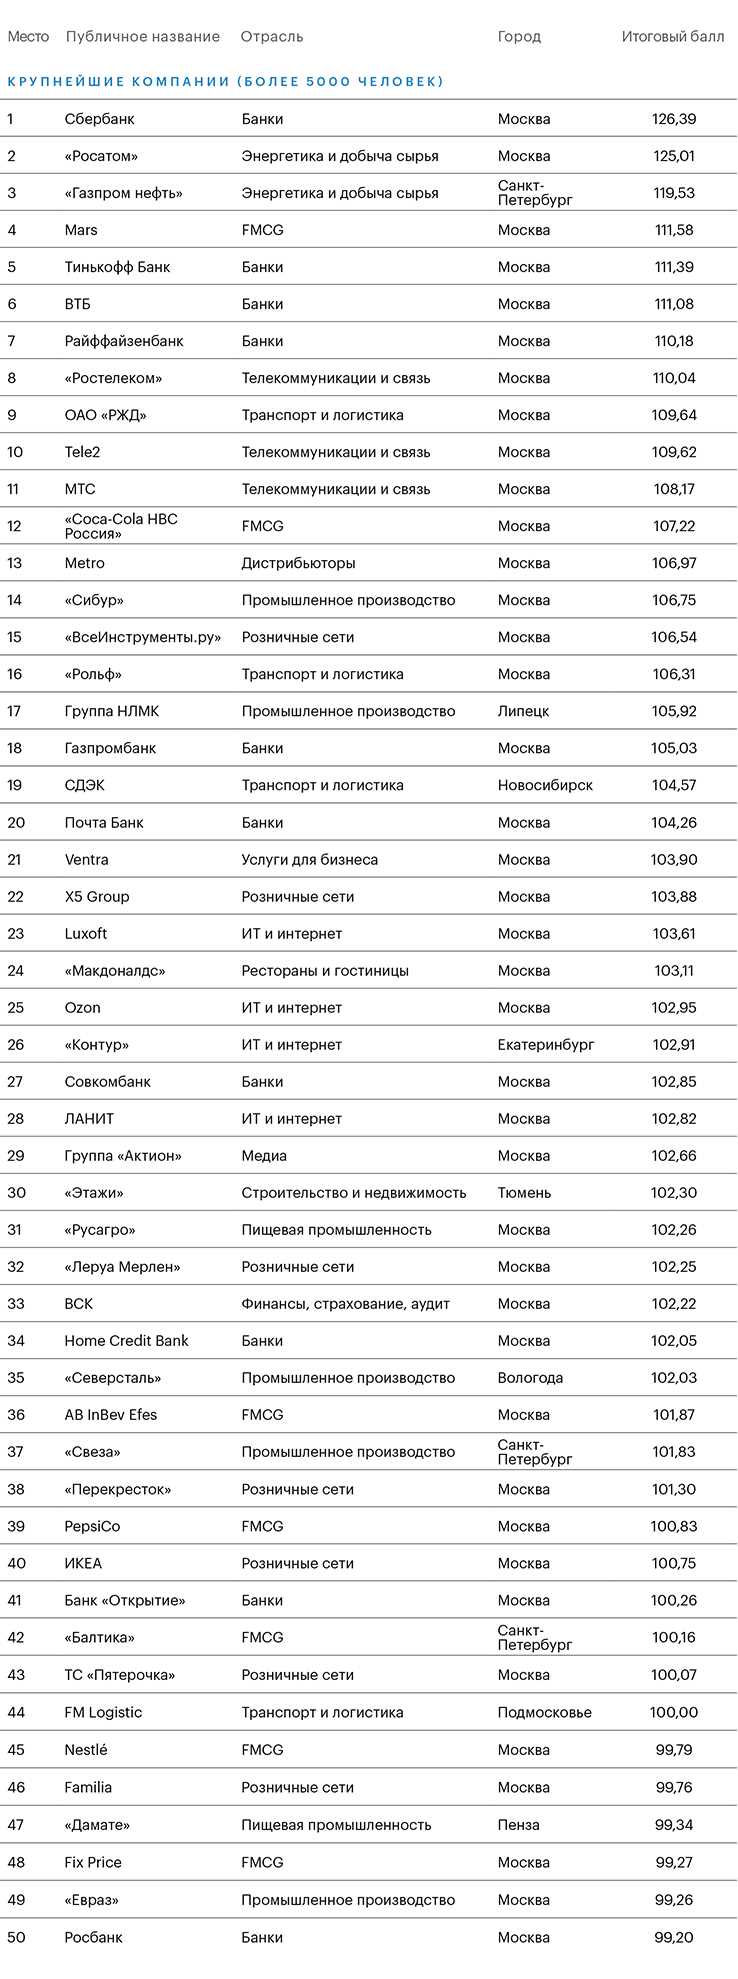 Где вы в рейтинге лучших российских работодателей? Оцените себя сами!